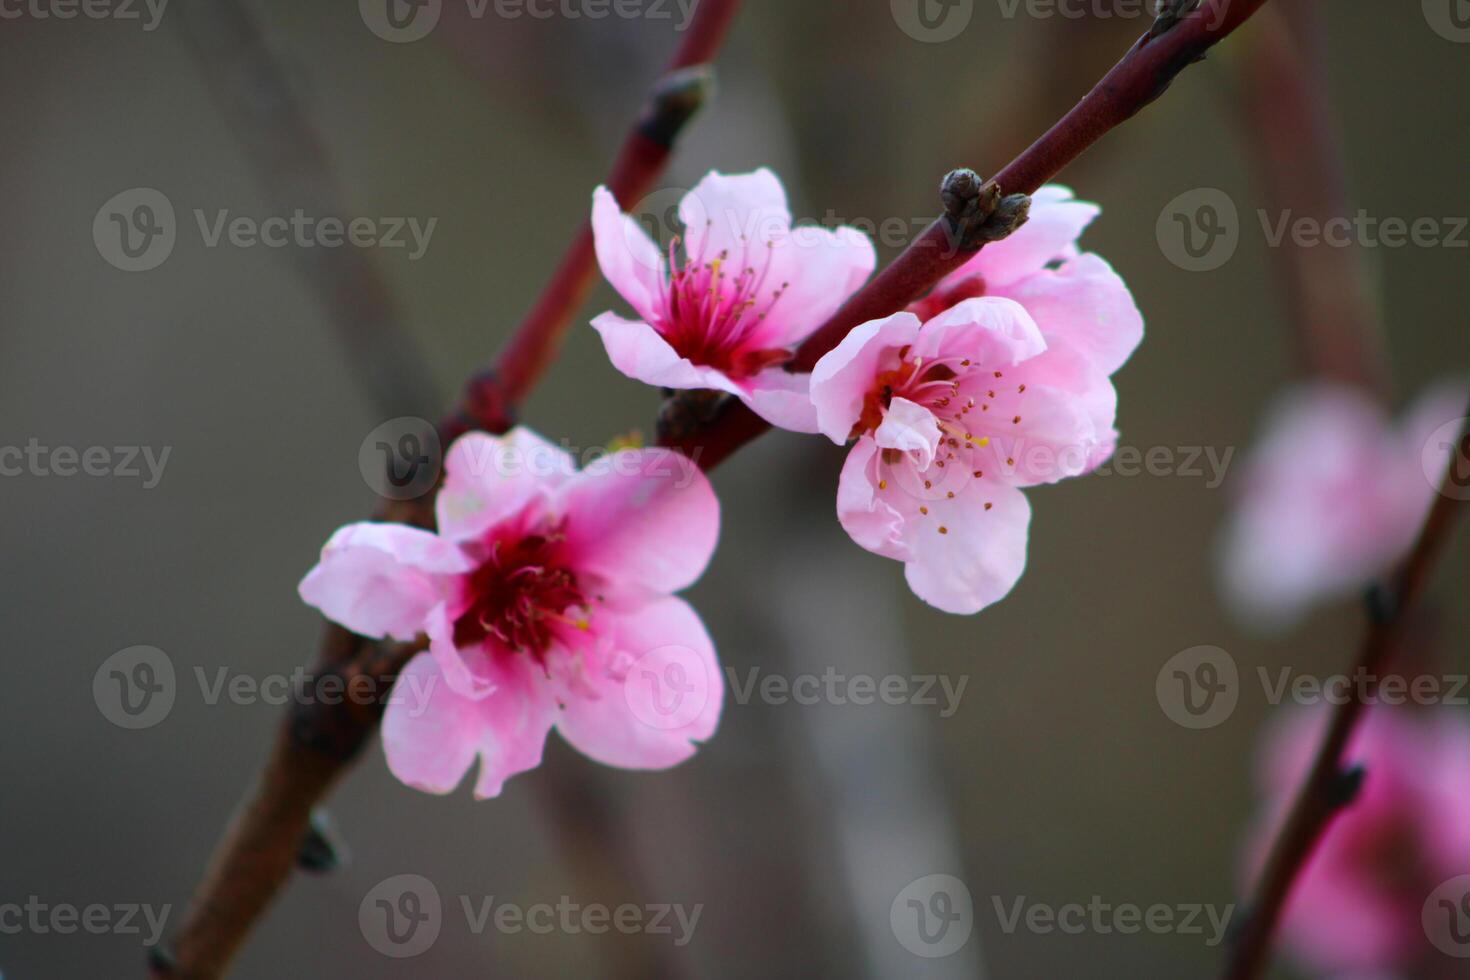 Primavera fundo. flor do pêssego fruta. uma árvore com Rosa flores este estão florescendo foto